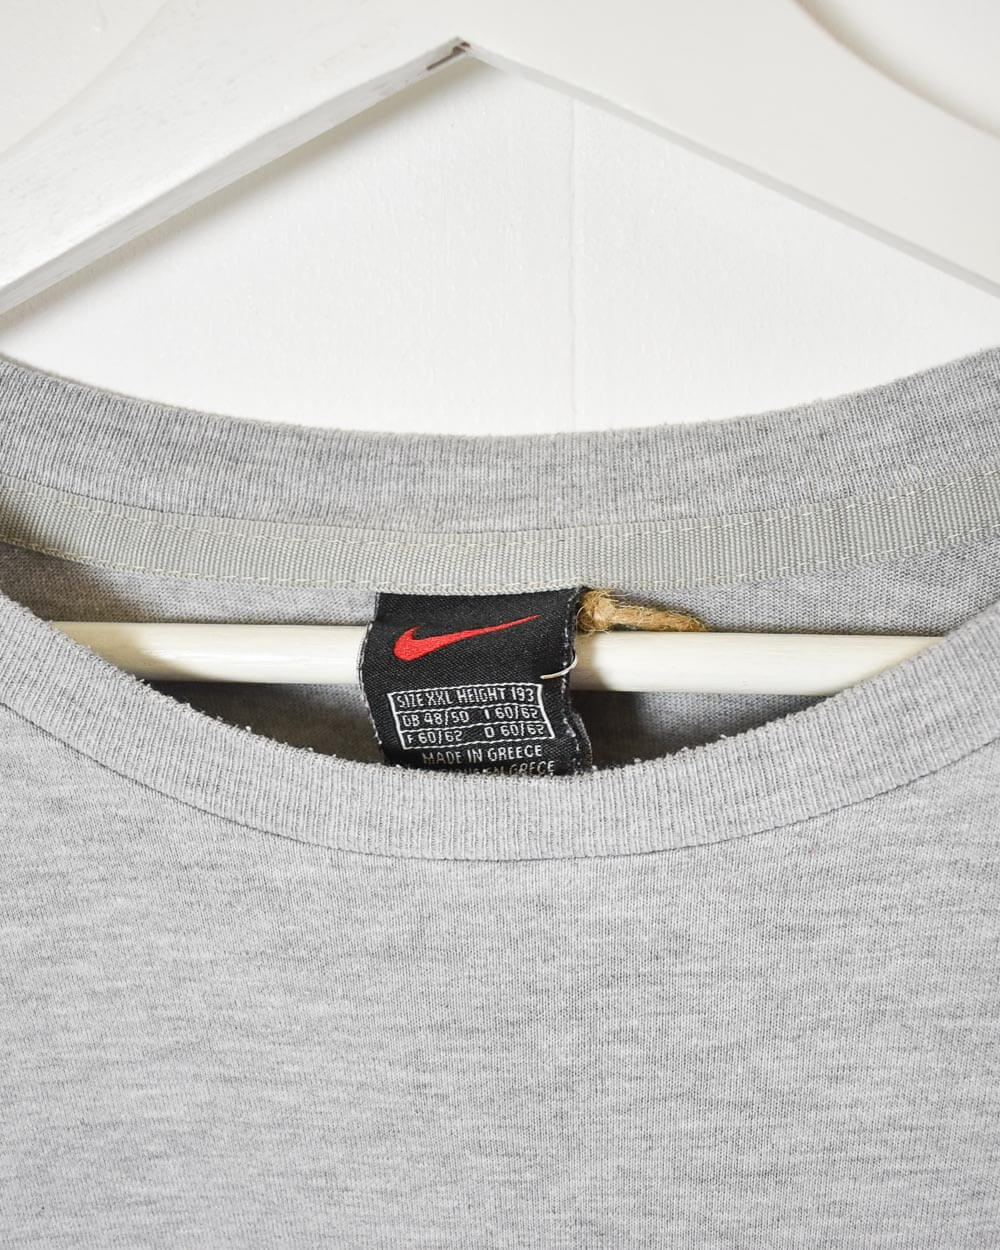 Stone Nike Sweatshirt - XX-Large